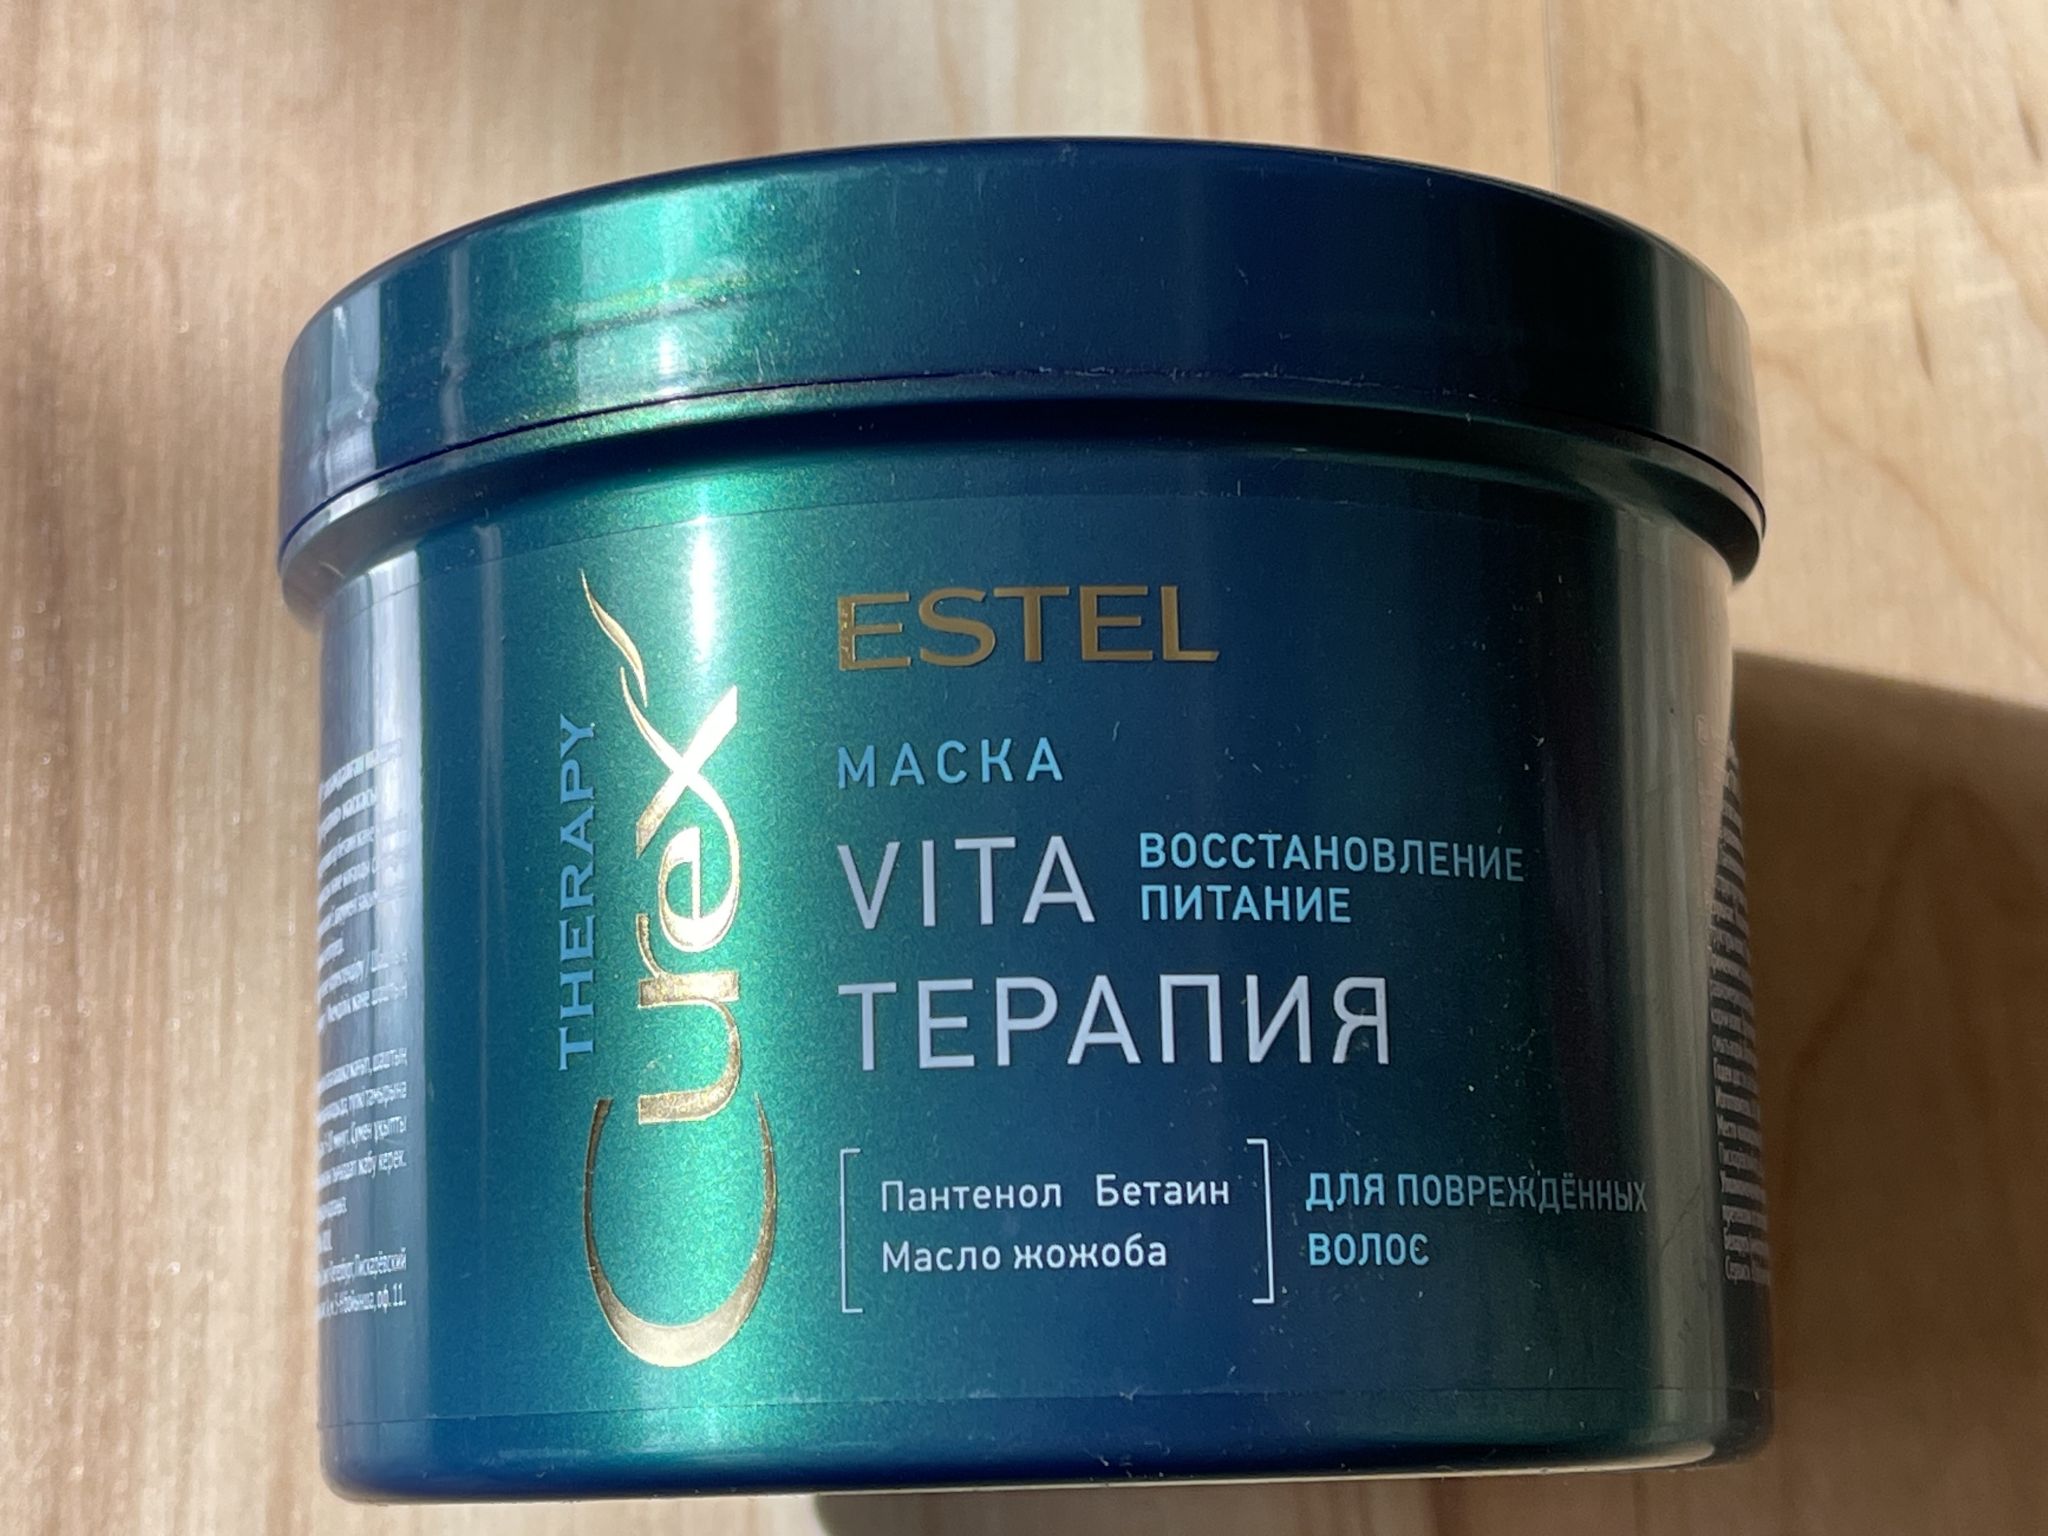 Estel Curex маска Vita терапия Therapy 500 мл. Маска "Vita-терапия" для повреждённых волос Curex Therapy (500 мл). Маска Эстель курекс.